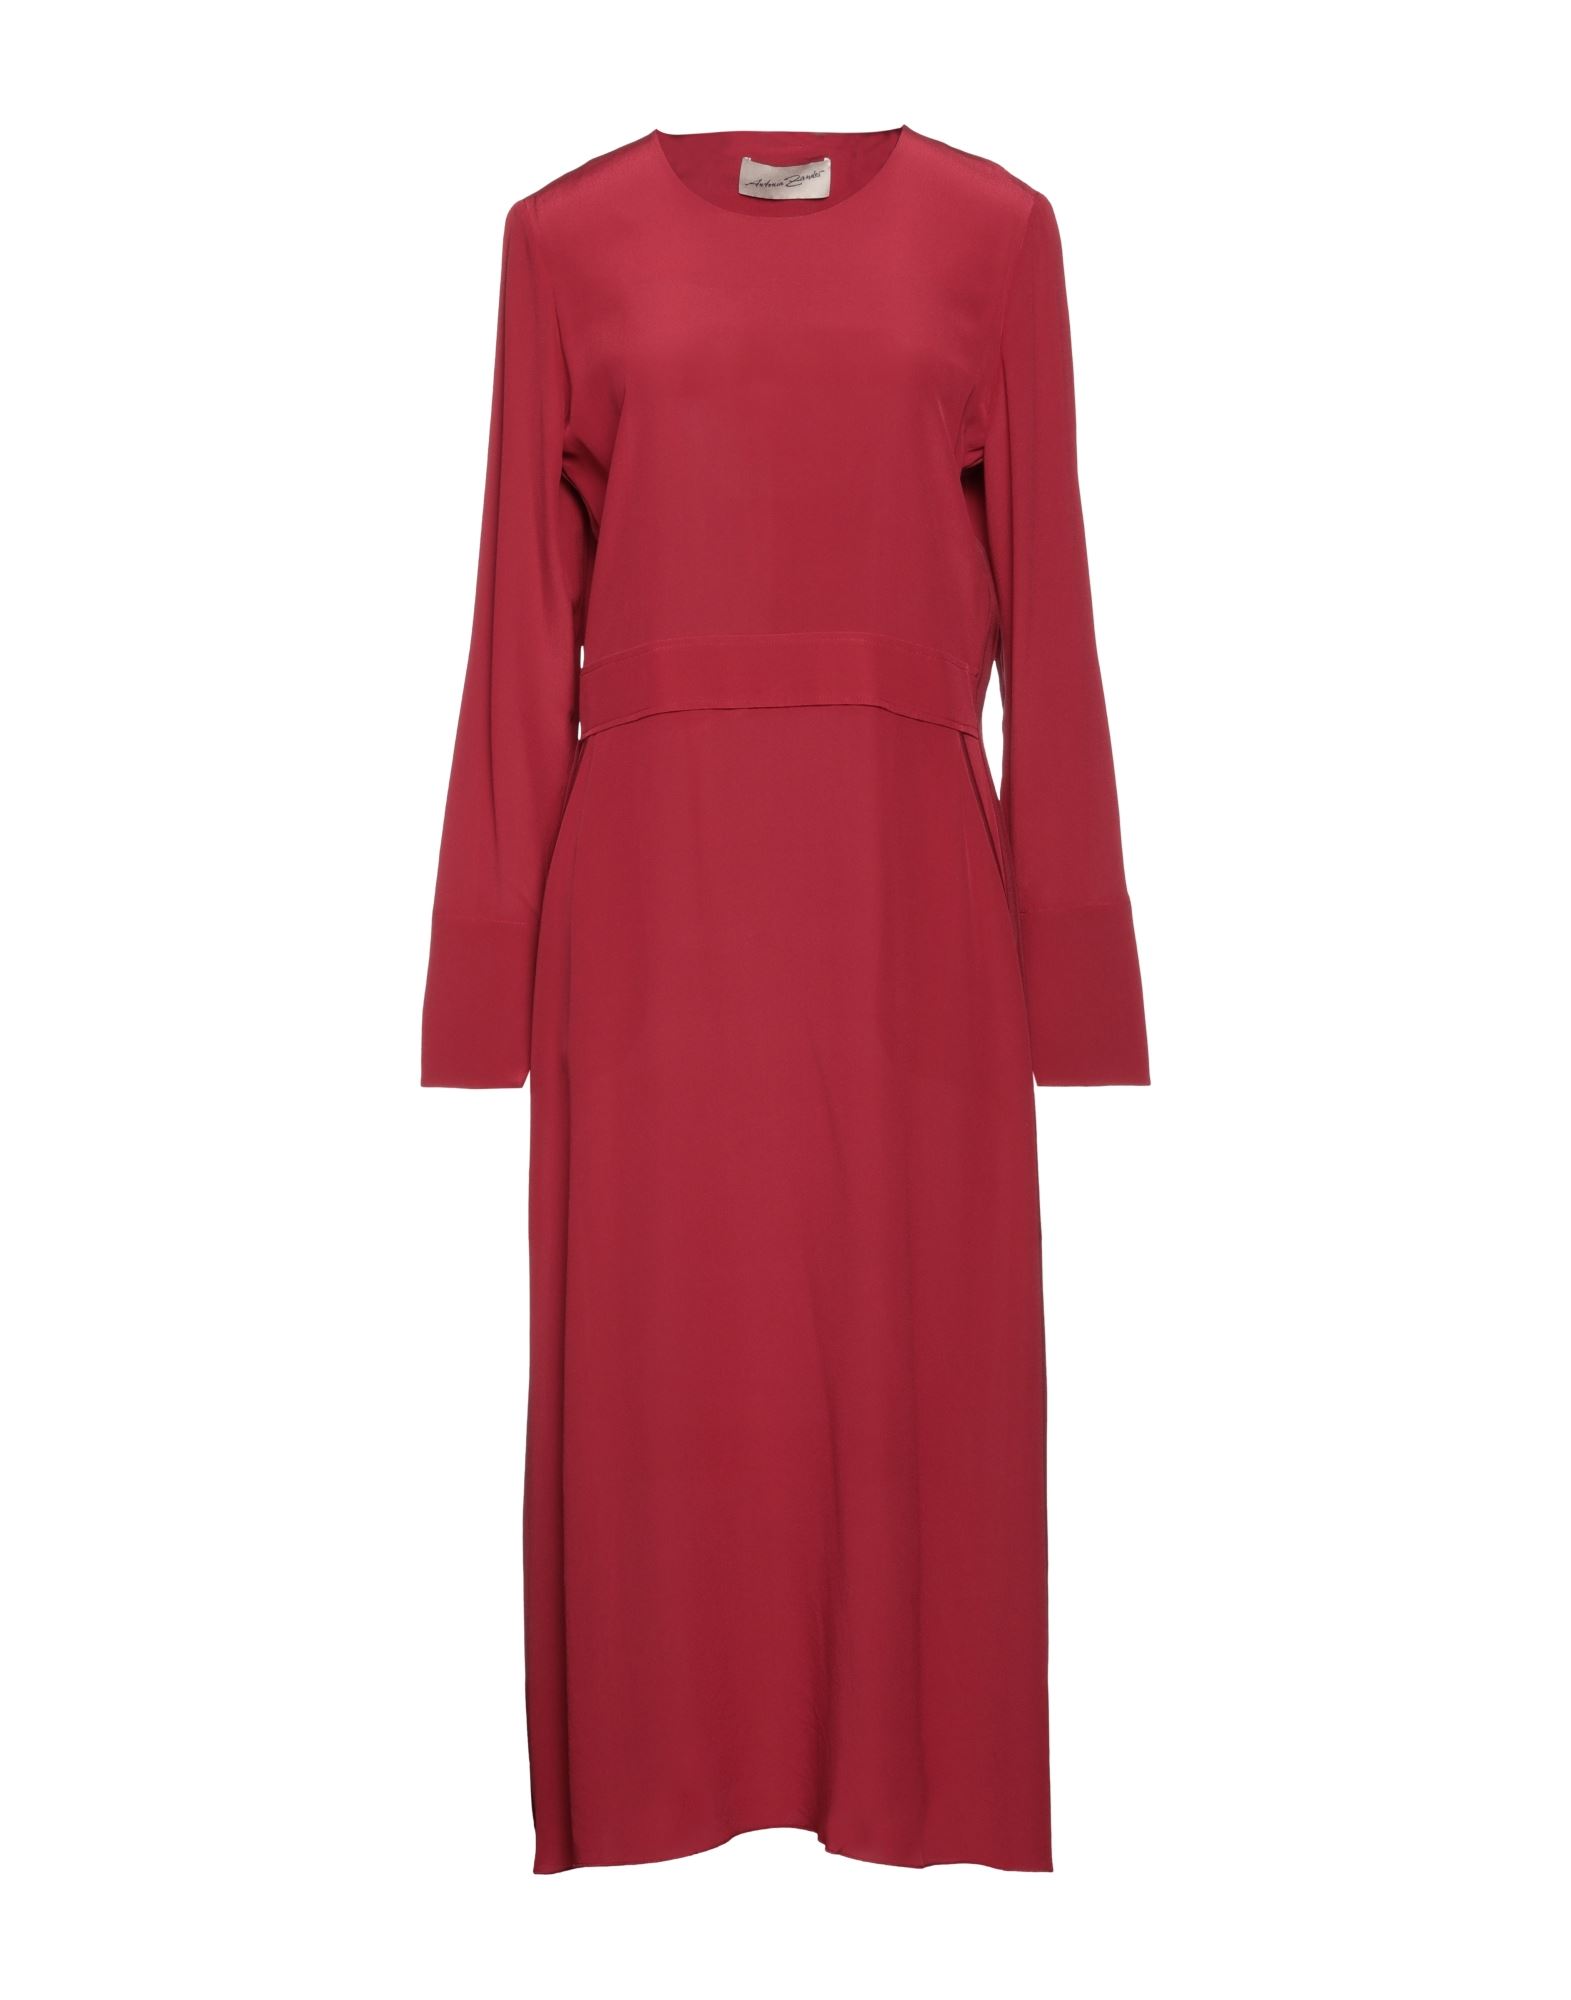 Antonia Zander Midi Dresses In Red | ModeSens